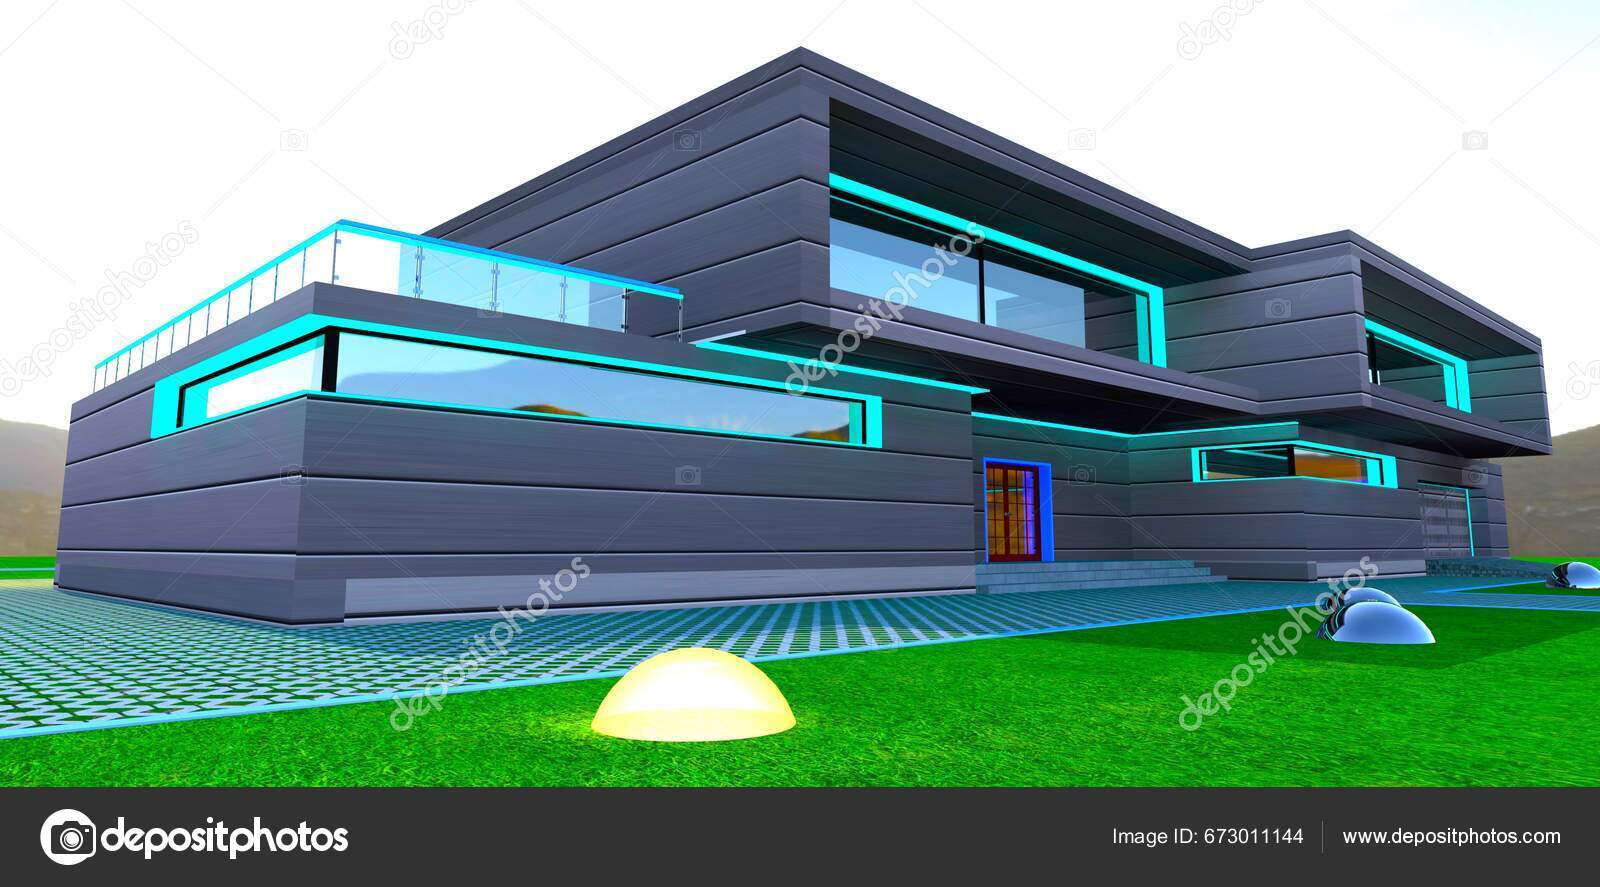 Renderização em 3d de uma casa moderna com fachada escura. casa com janelas  panorâmicas e terraço. tijolo